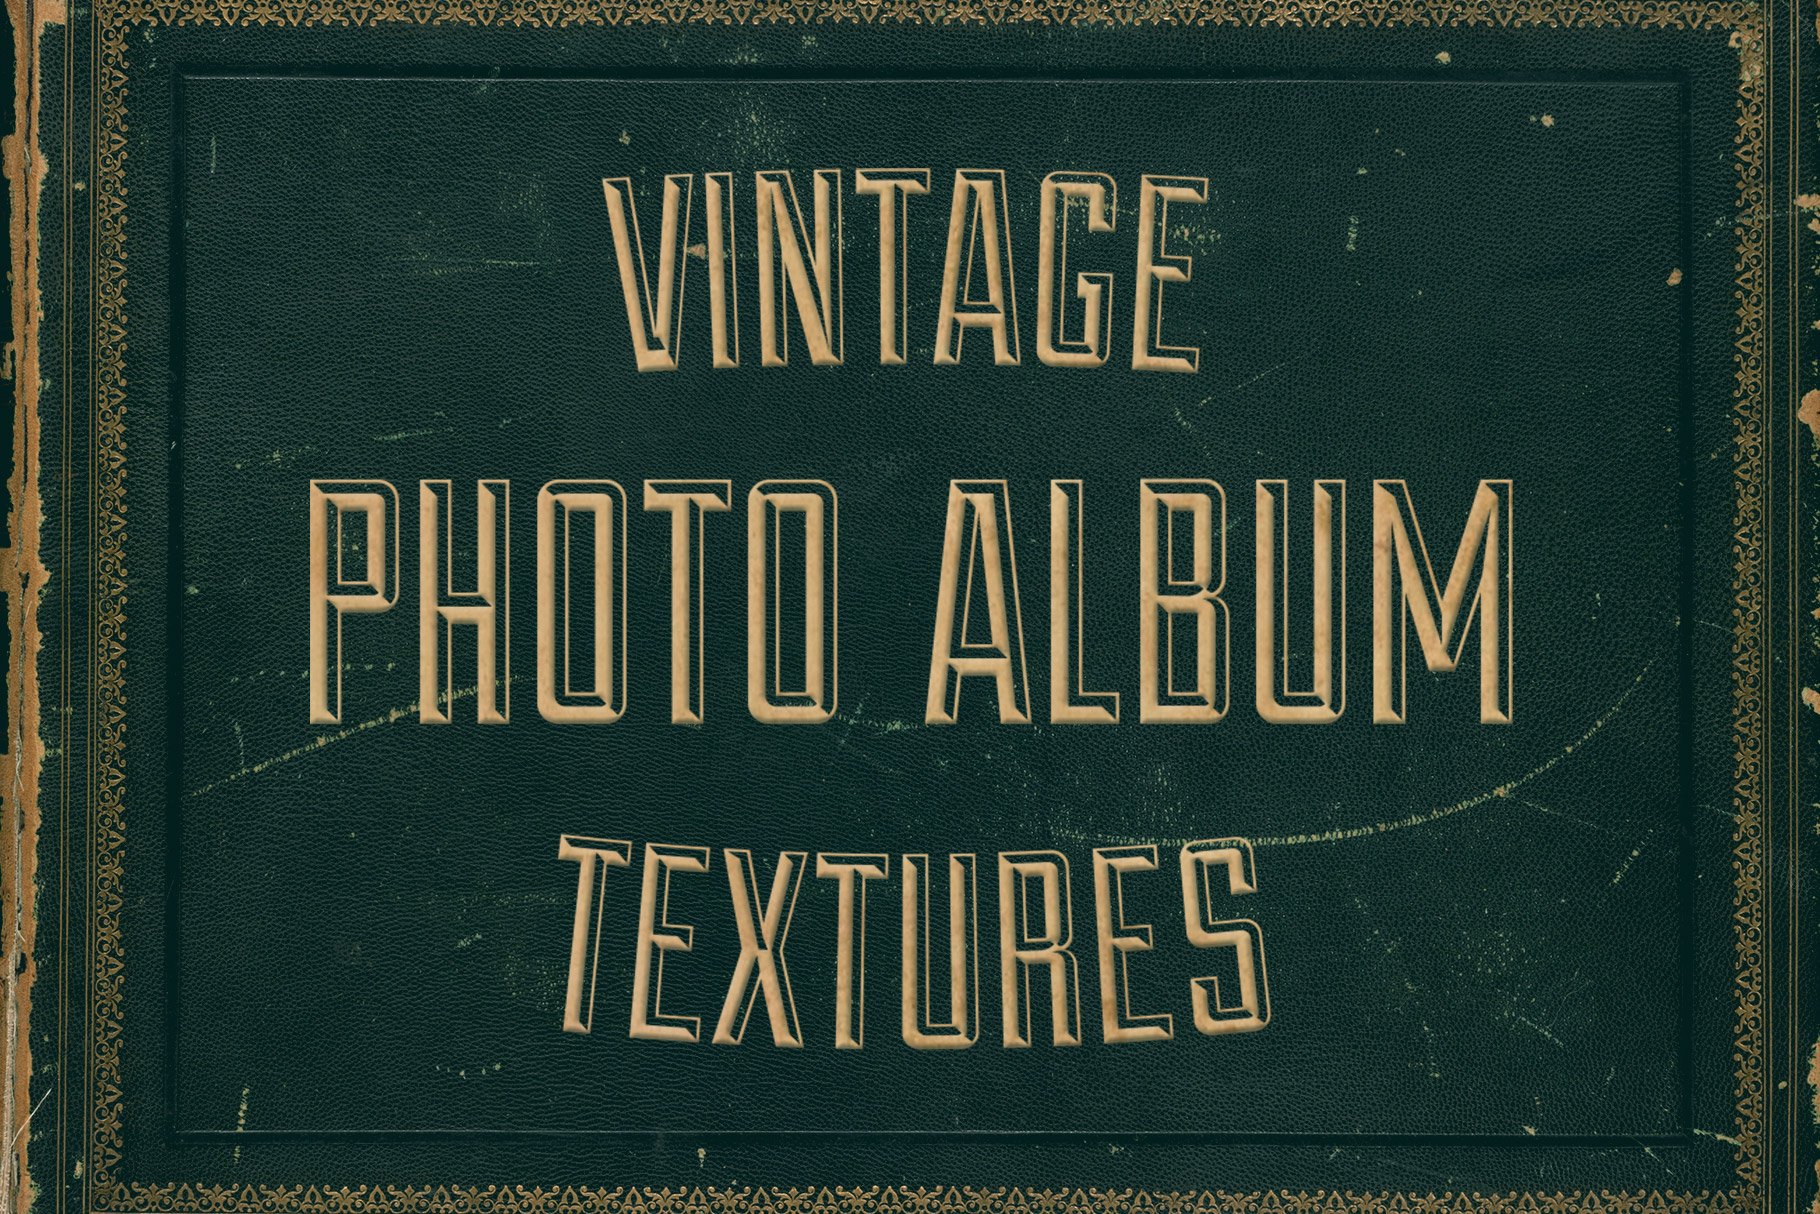 Vintage Photo Album Cover Textures